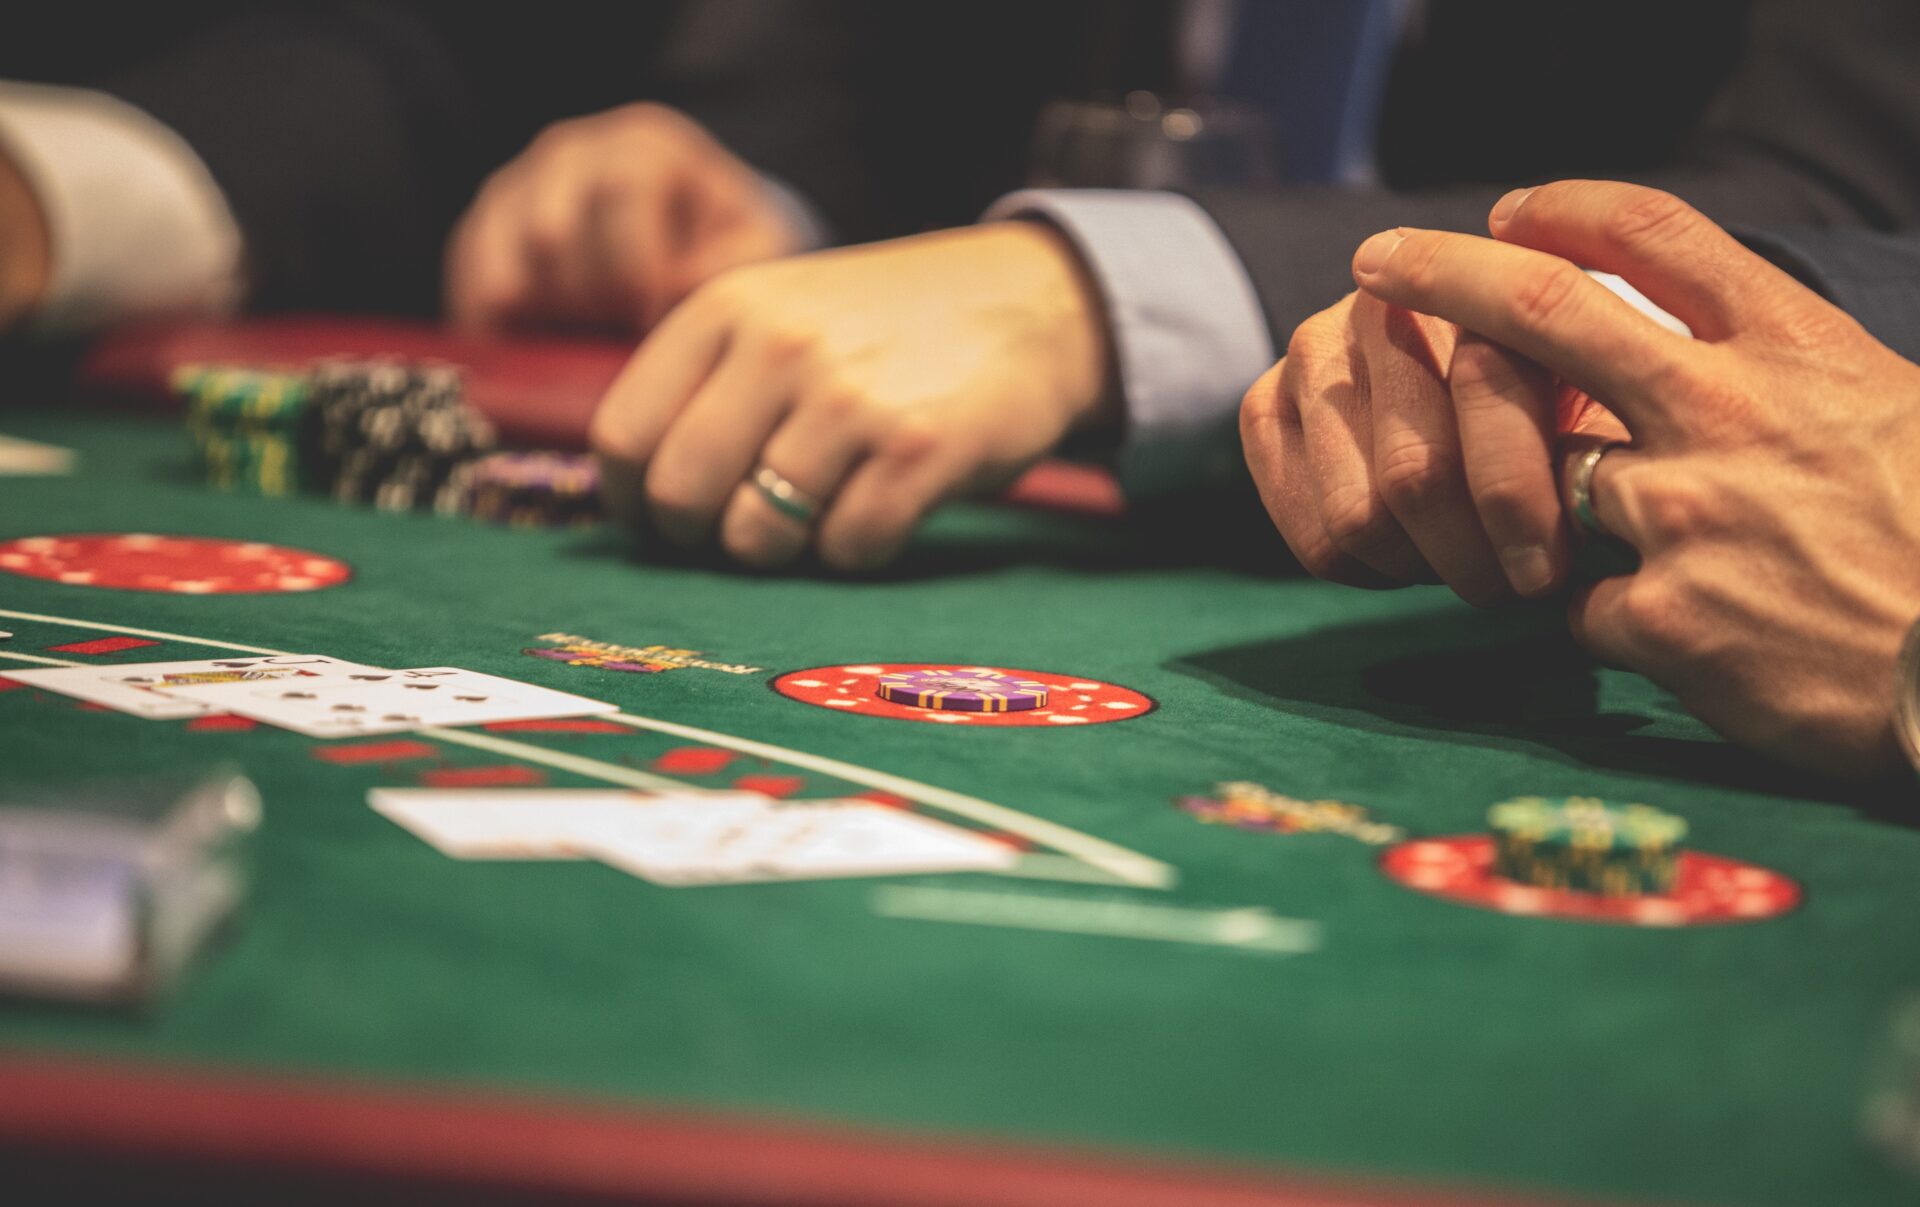 Stół do gry w pokera, na nim karty i dłonie dwóch osób w garniturach.